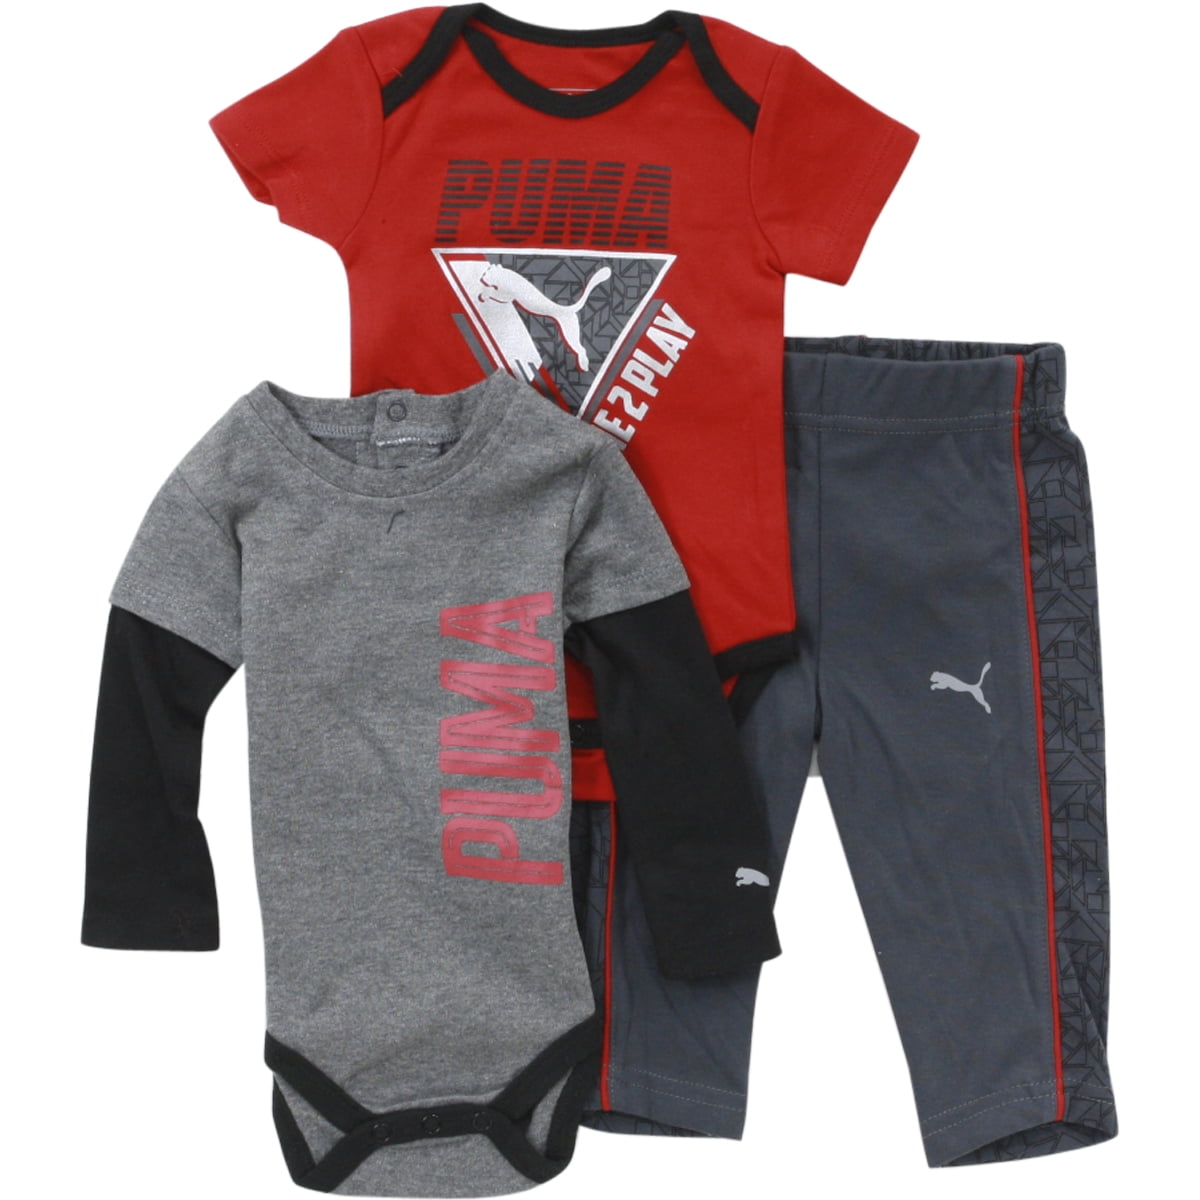 PUMA Baby Outfit Sets - Walmart.com